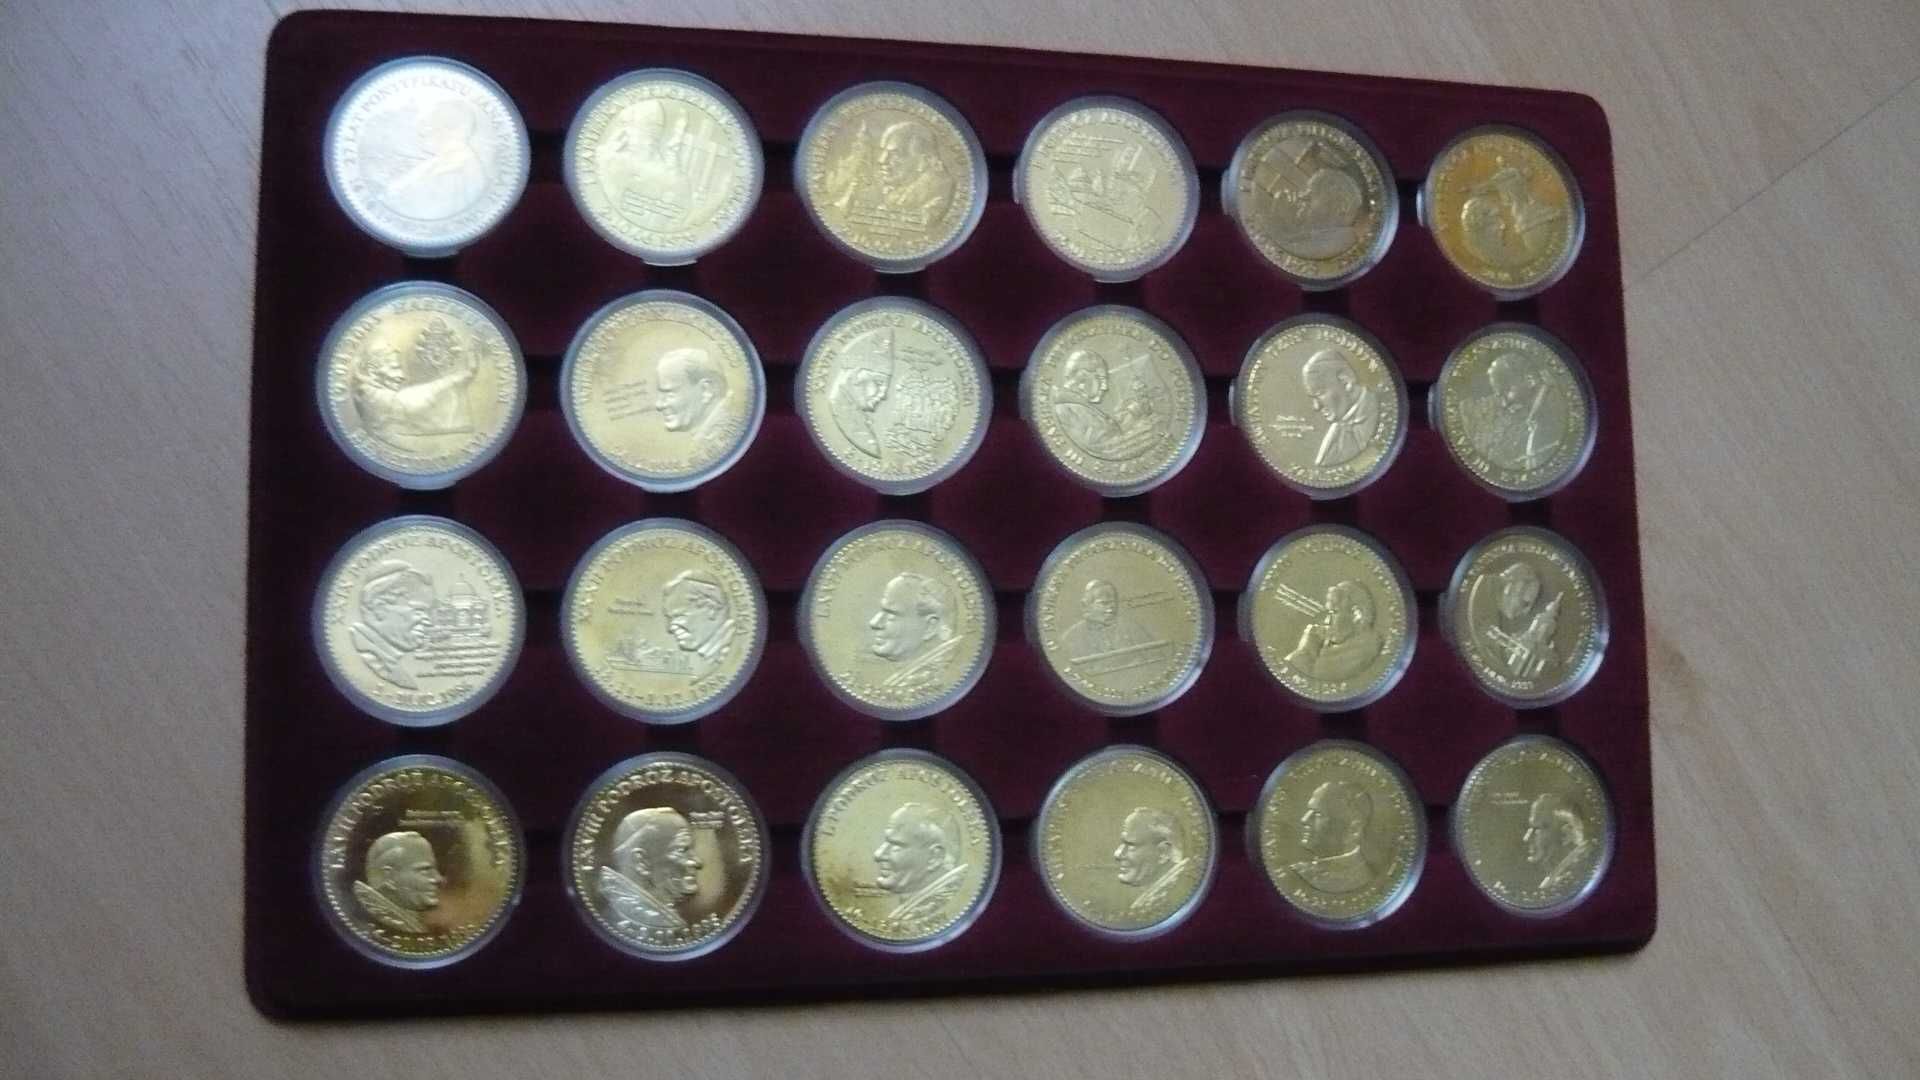 Kolekcja 24 pozłacanych medali Jan Paweł II-Pielgrzym